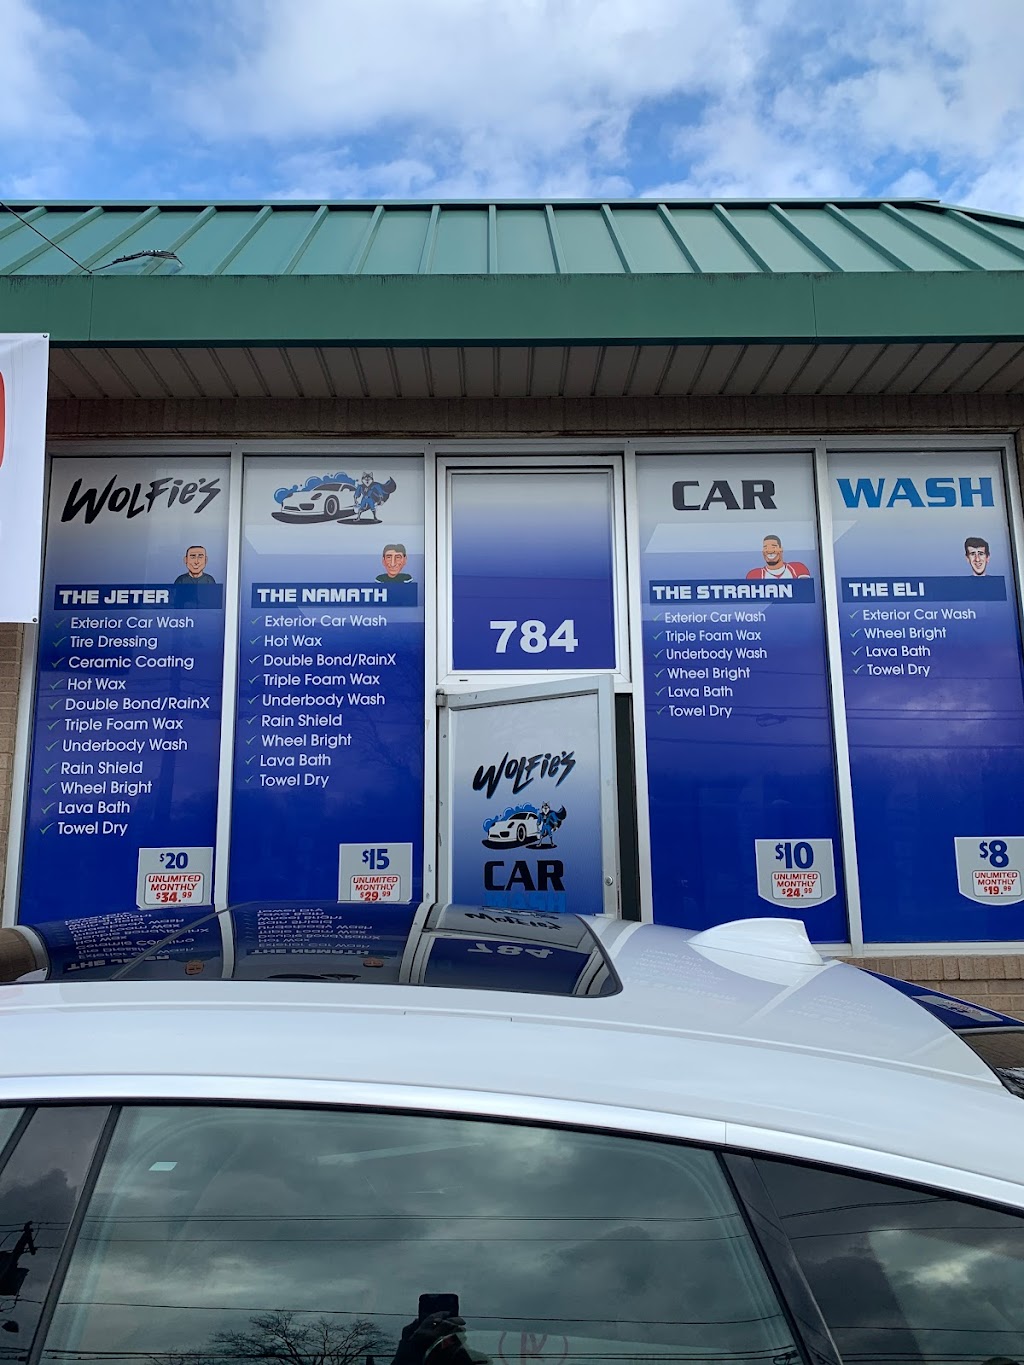 Wolfies Car Wash | 784 Mountainview Blvd, Wayne, NJ 07470 | Phone: (973) 476-5889